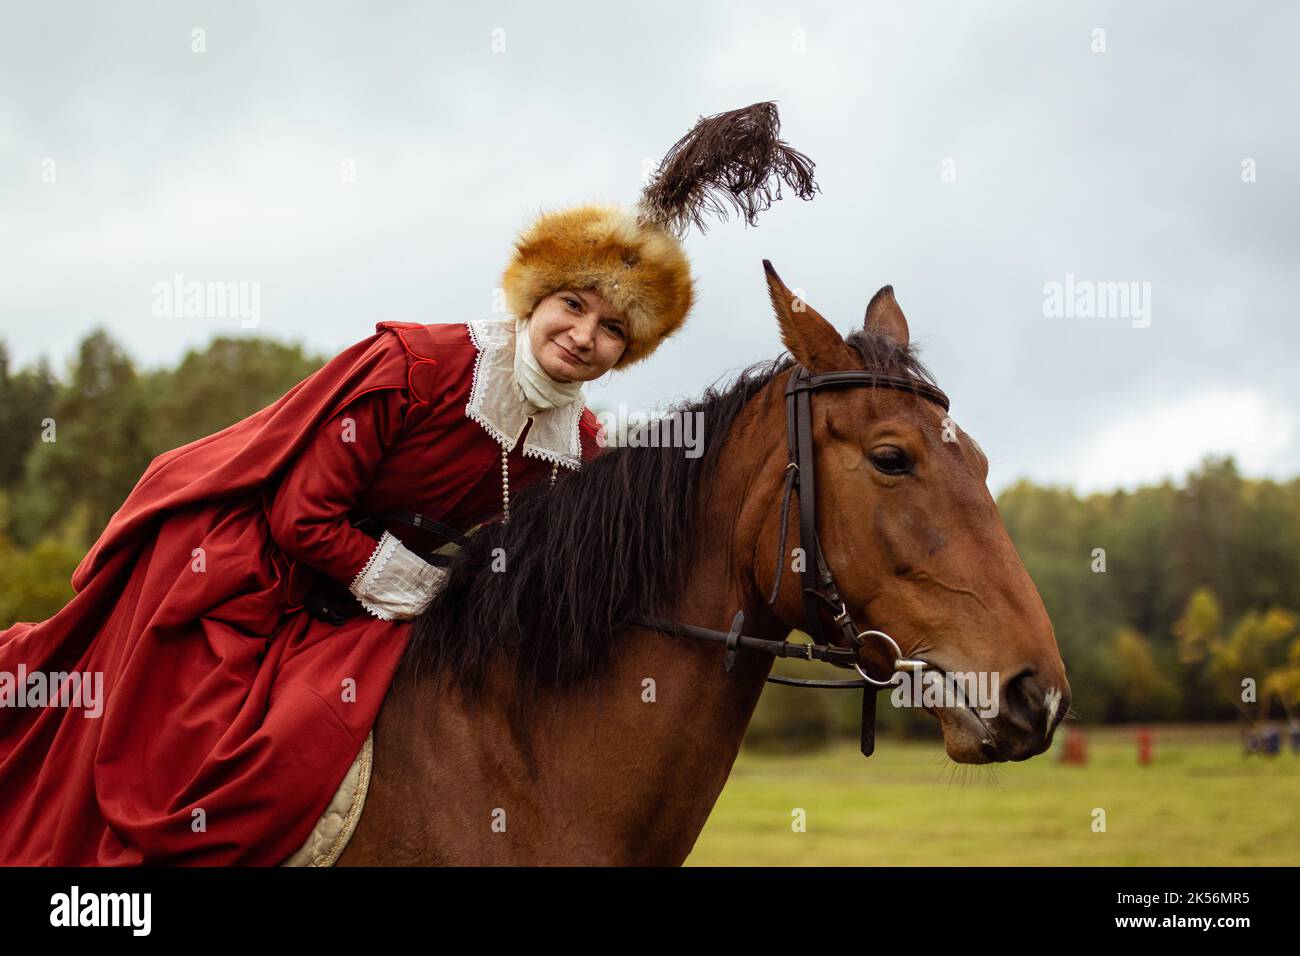 Ritratto di una femmina equestre i a cavallo. La donna è vestita in un costume - una copia del vestito europeo del 17th ° secolo Foto Stock